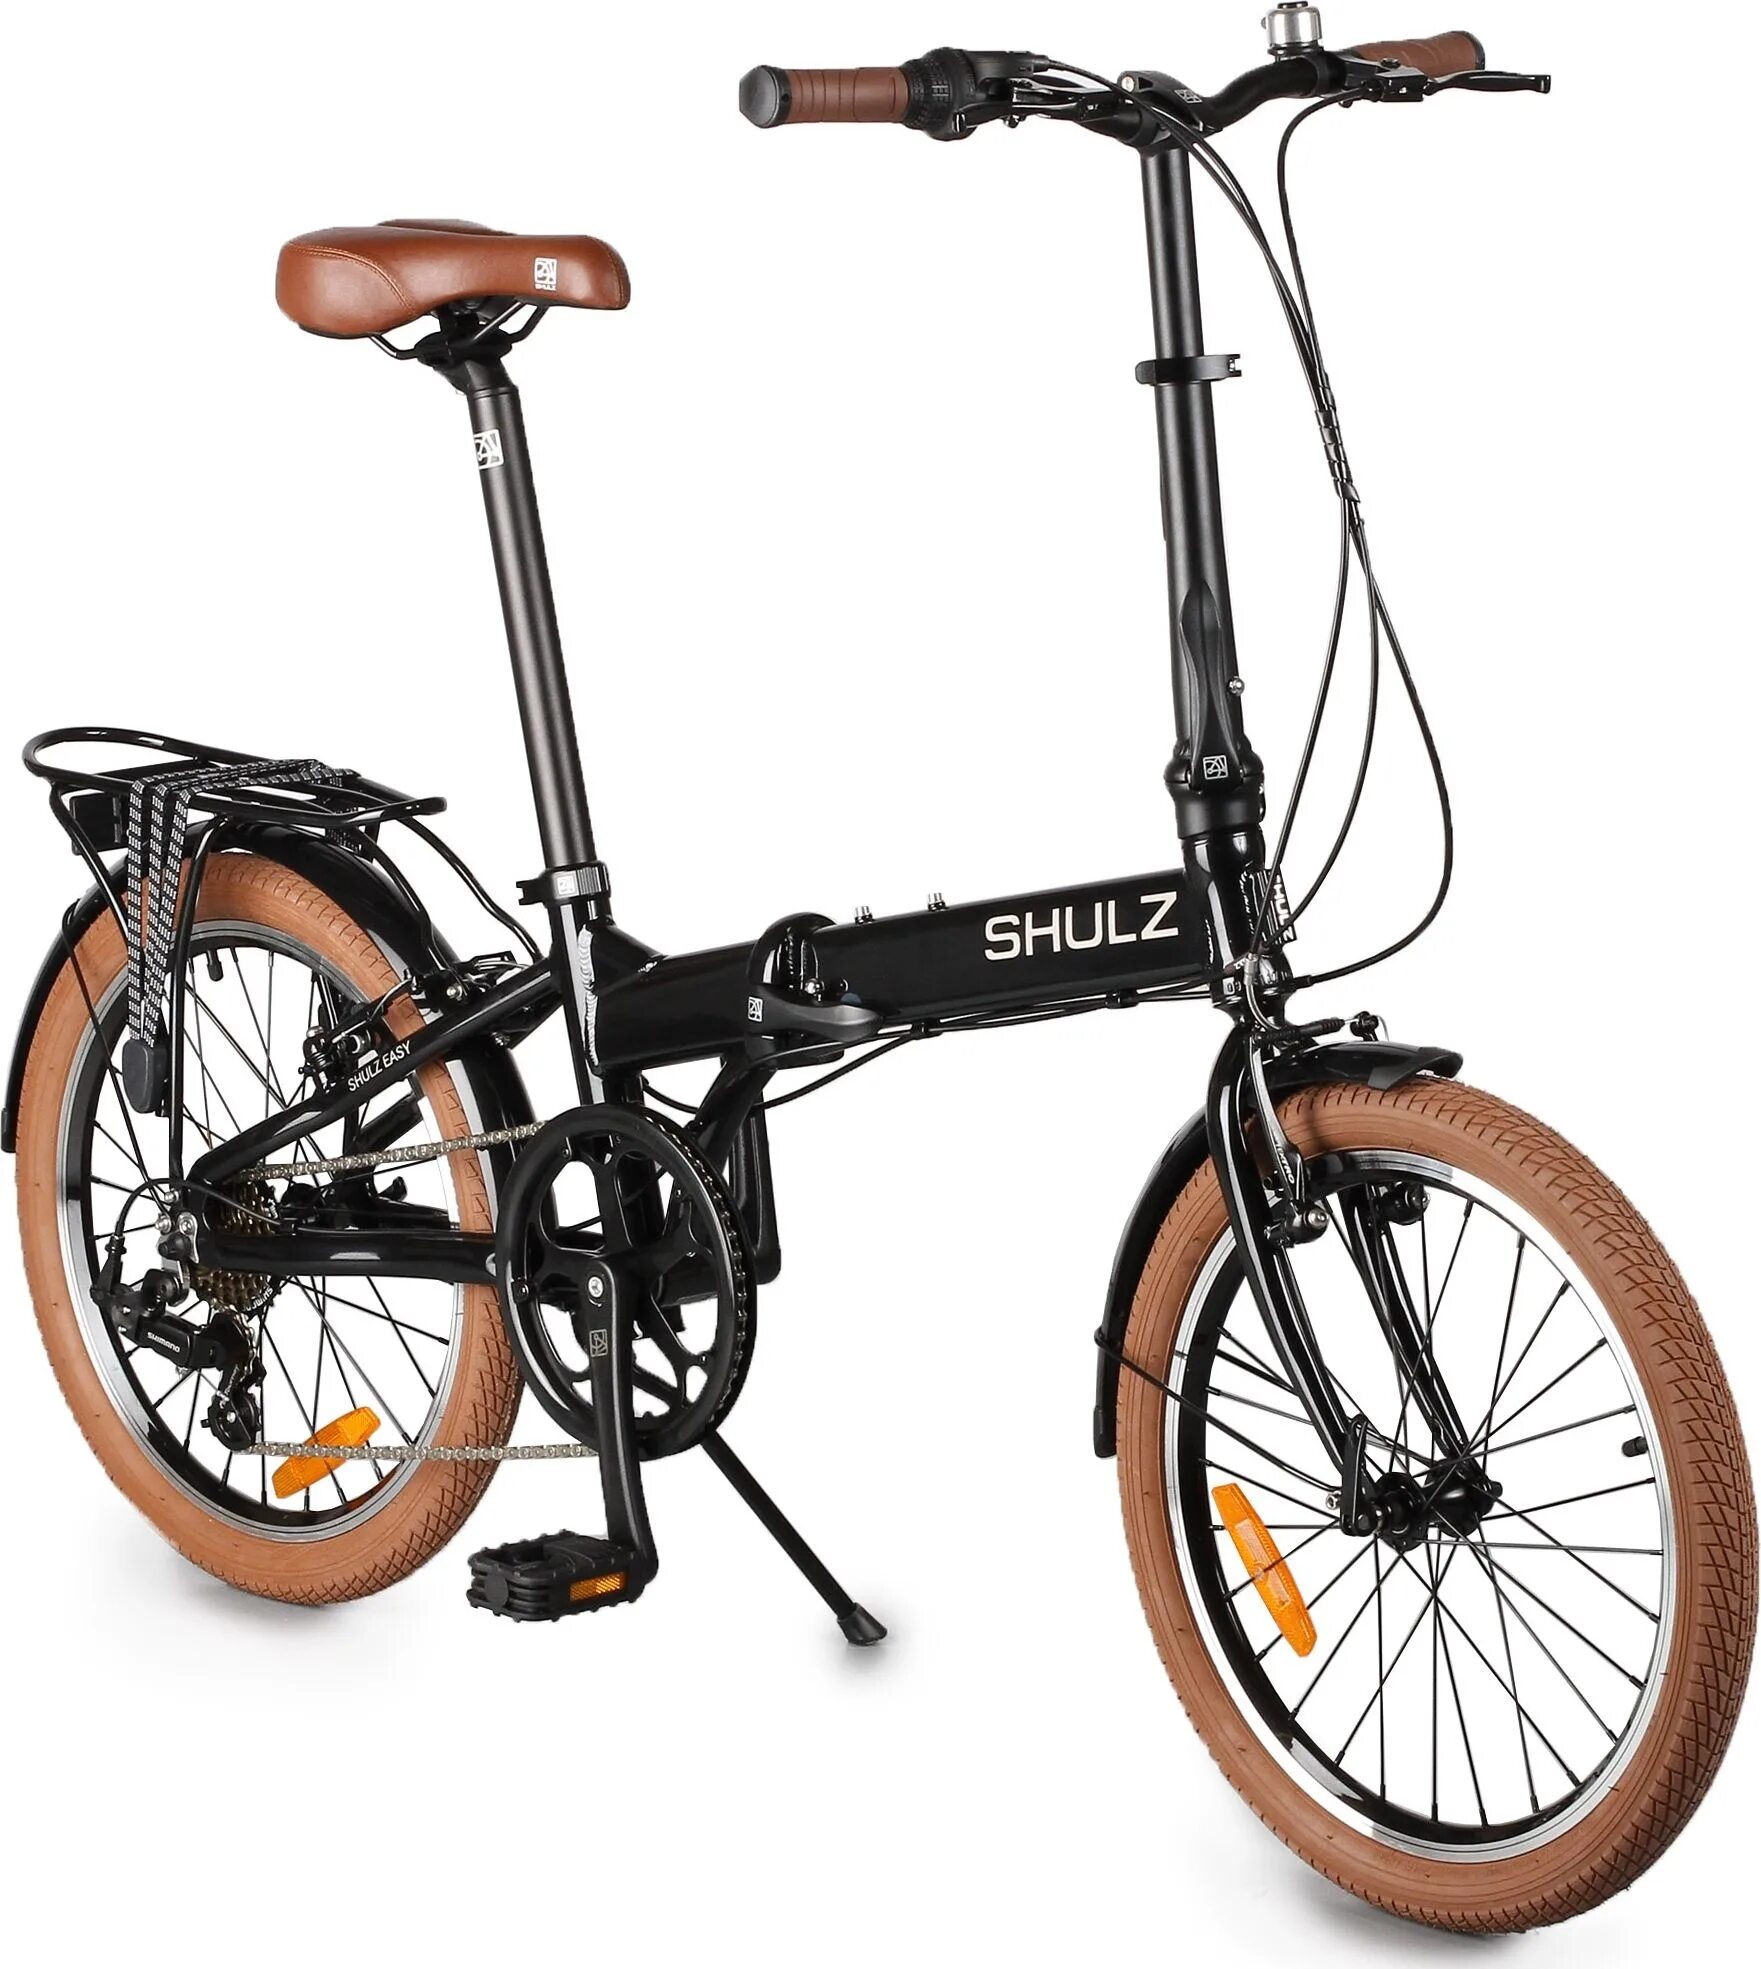 Велосипеды складные спб взрослые. Городской велосипед Shulz easy. Складной велосипед Shulz easy. Городской велосипед Shulz Lentus. Велосипед Шульц складной алюминиевый.